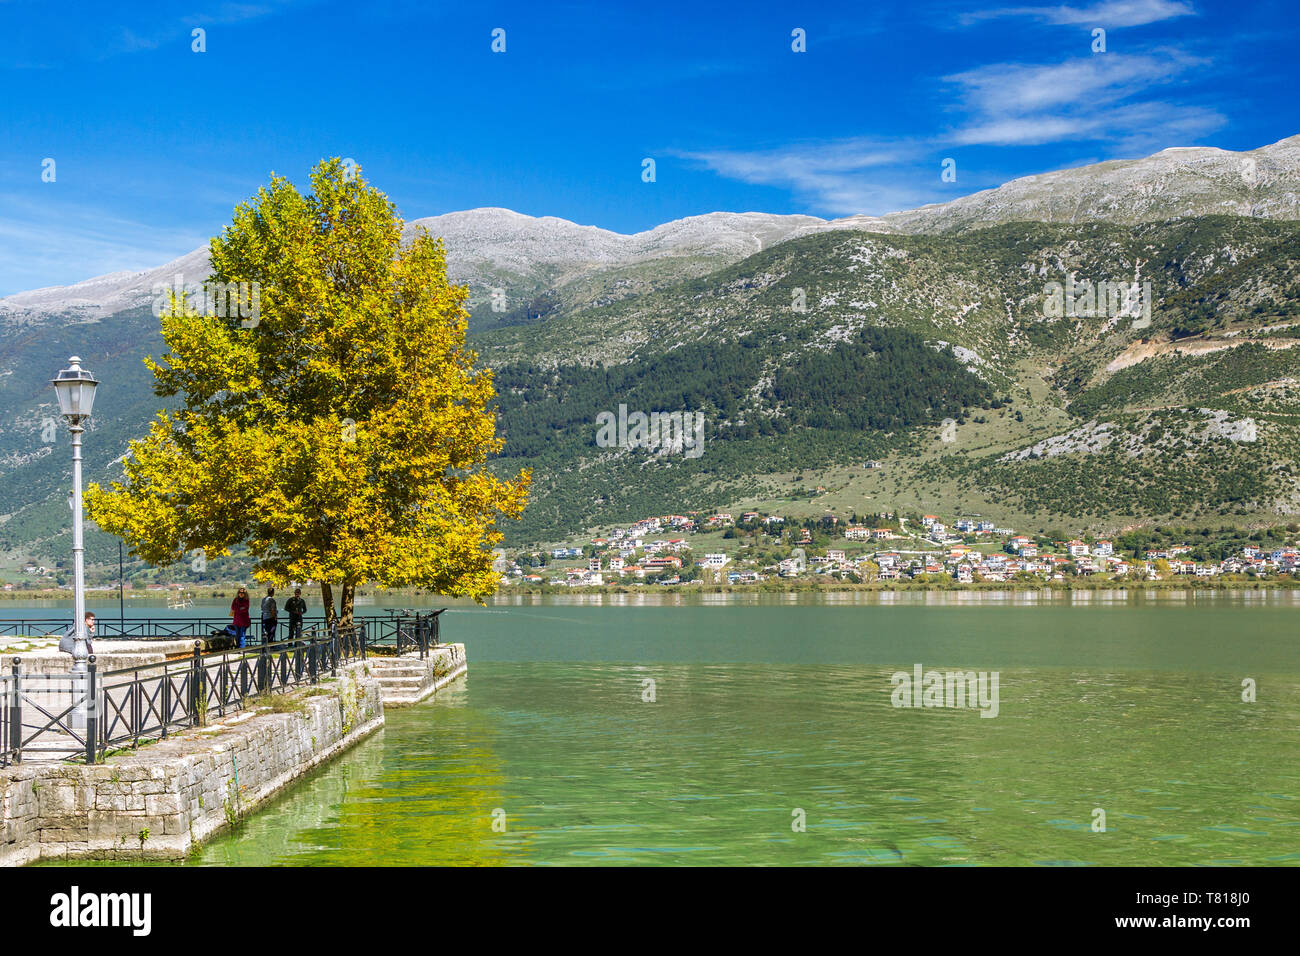 Ioannina, am See Pamvotis oder Pamvotida, der berühmte See der Stadt Ioannins, in der Region Epirus, Nordgriechenland, Europa. Stockfoto